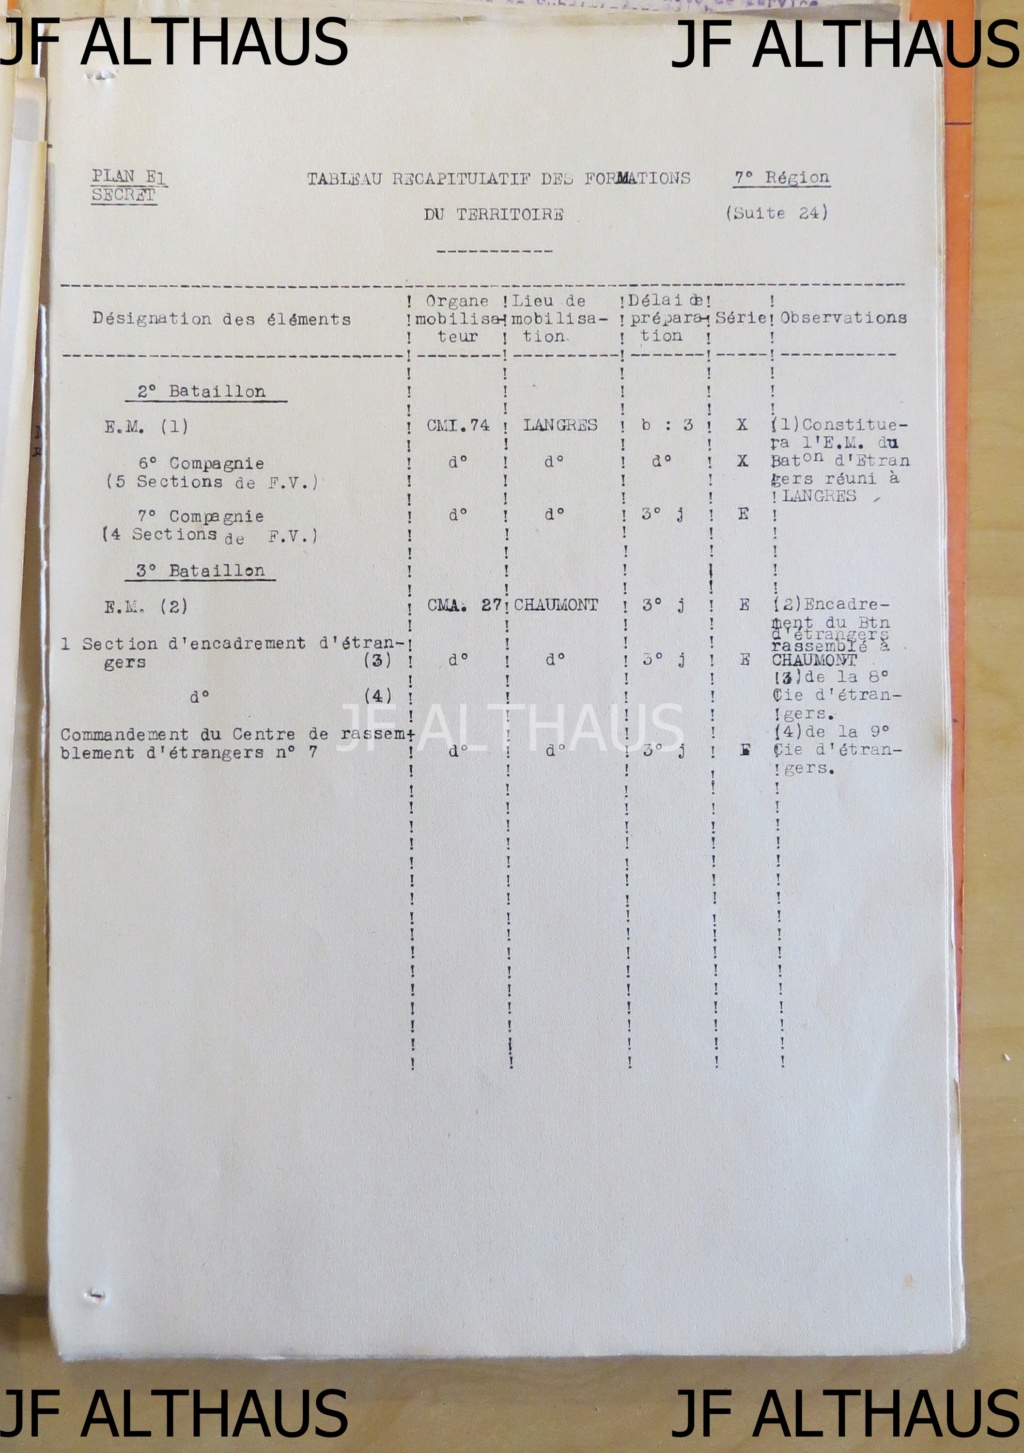 Les régiments régionaux de la 7e région militaire selon le plan E1 à jour en juillet 1939 Img_9926